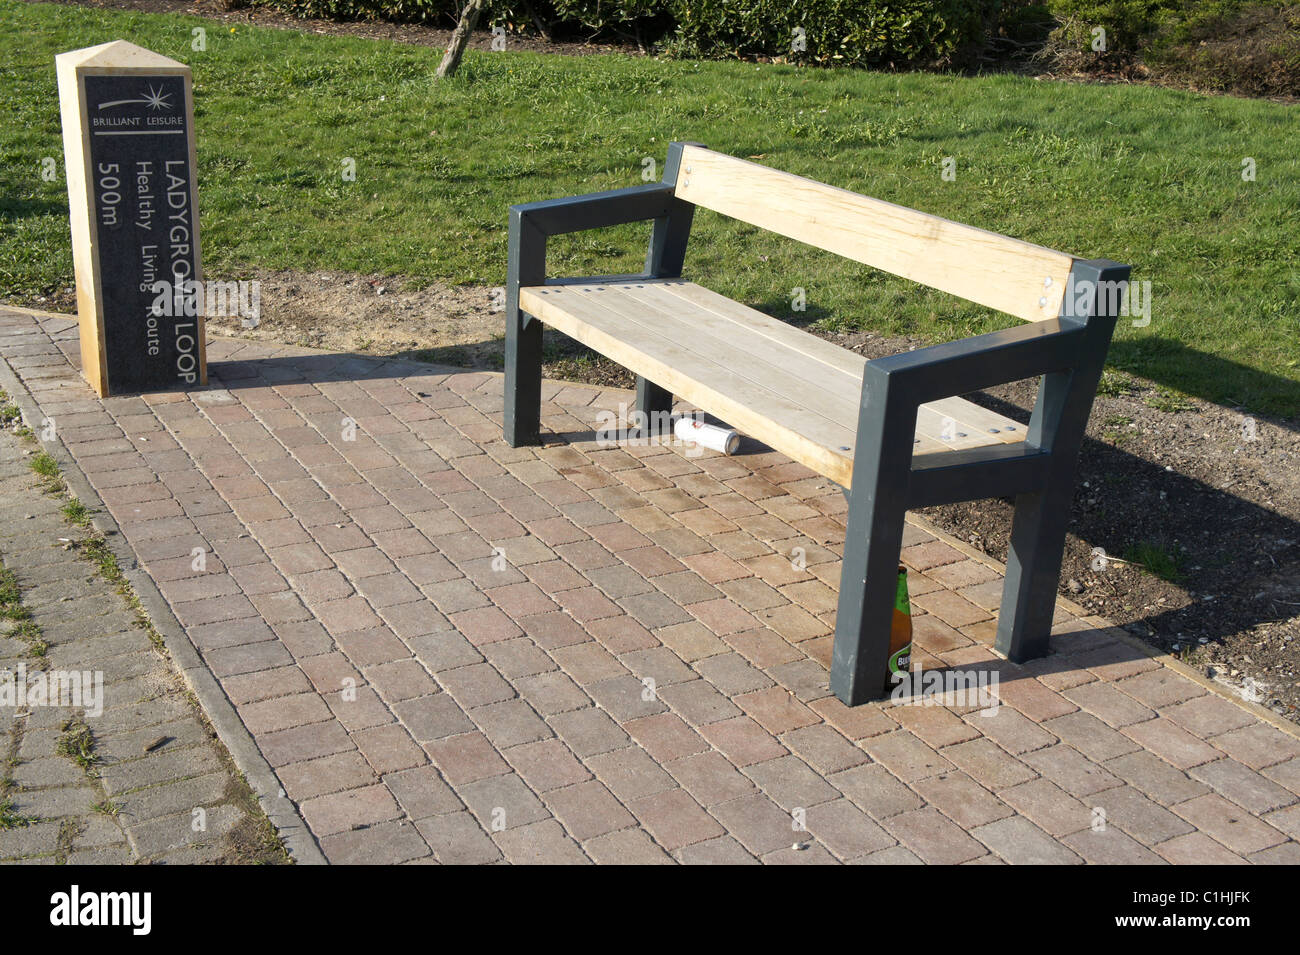 Ladygrove Schleife, Didcot, Oxfordshire, gesund Leben-Route, Park bench mit Bierflasche und können. Anti-soziales Verhalten. Stockfoto